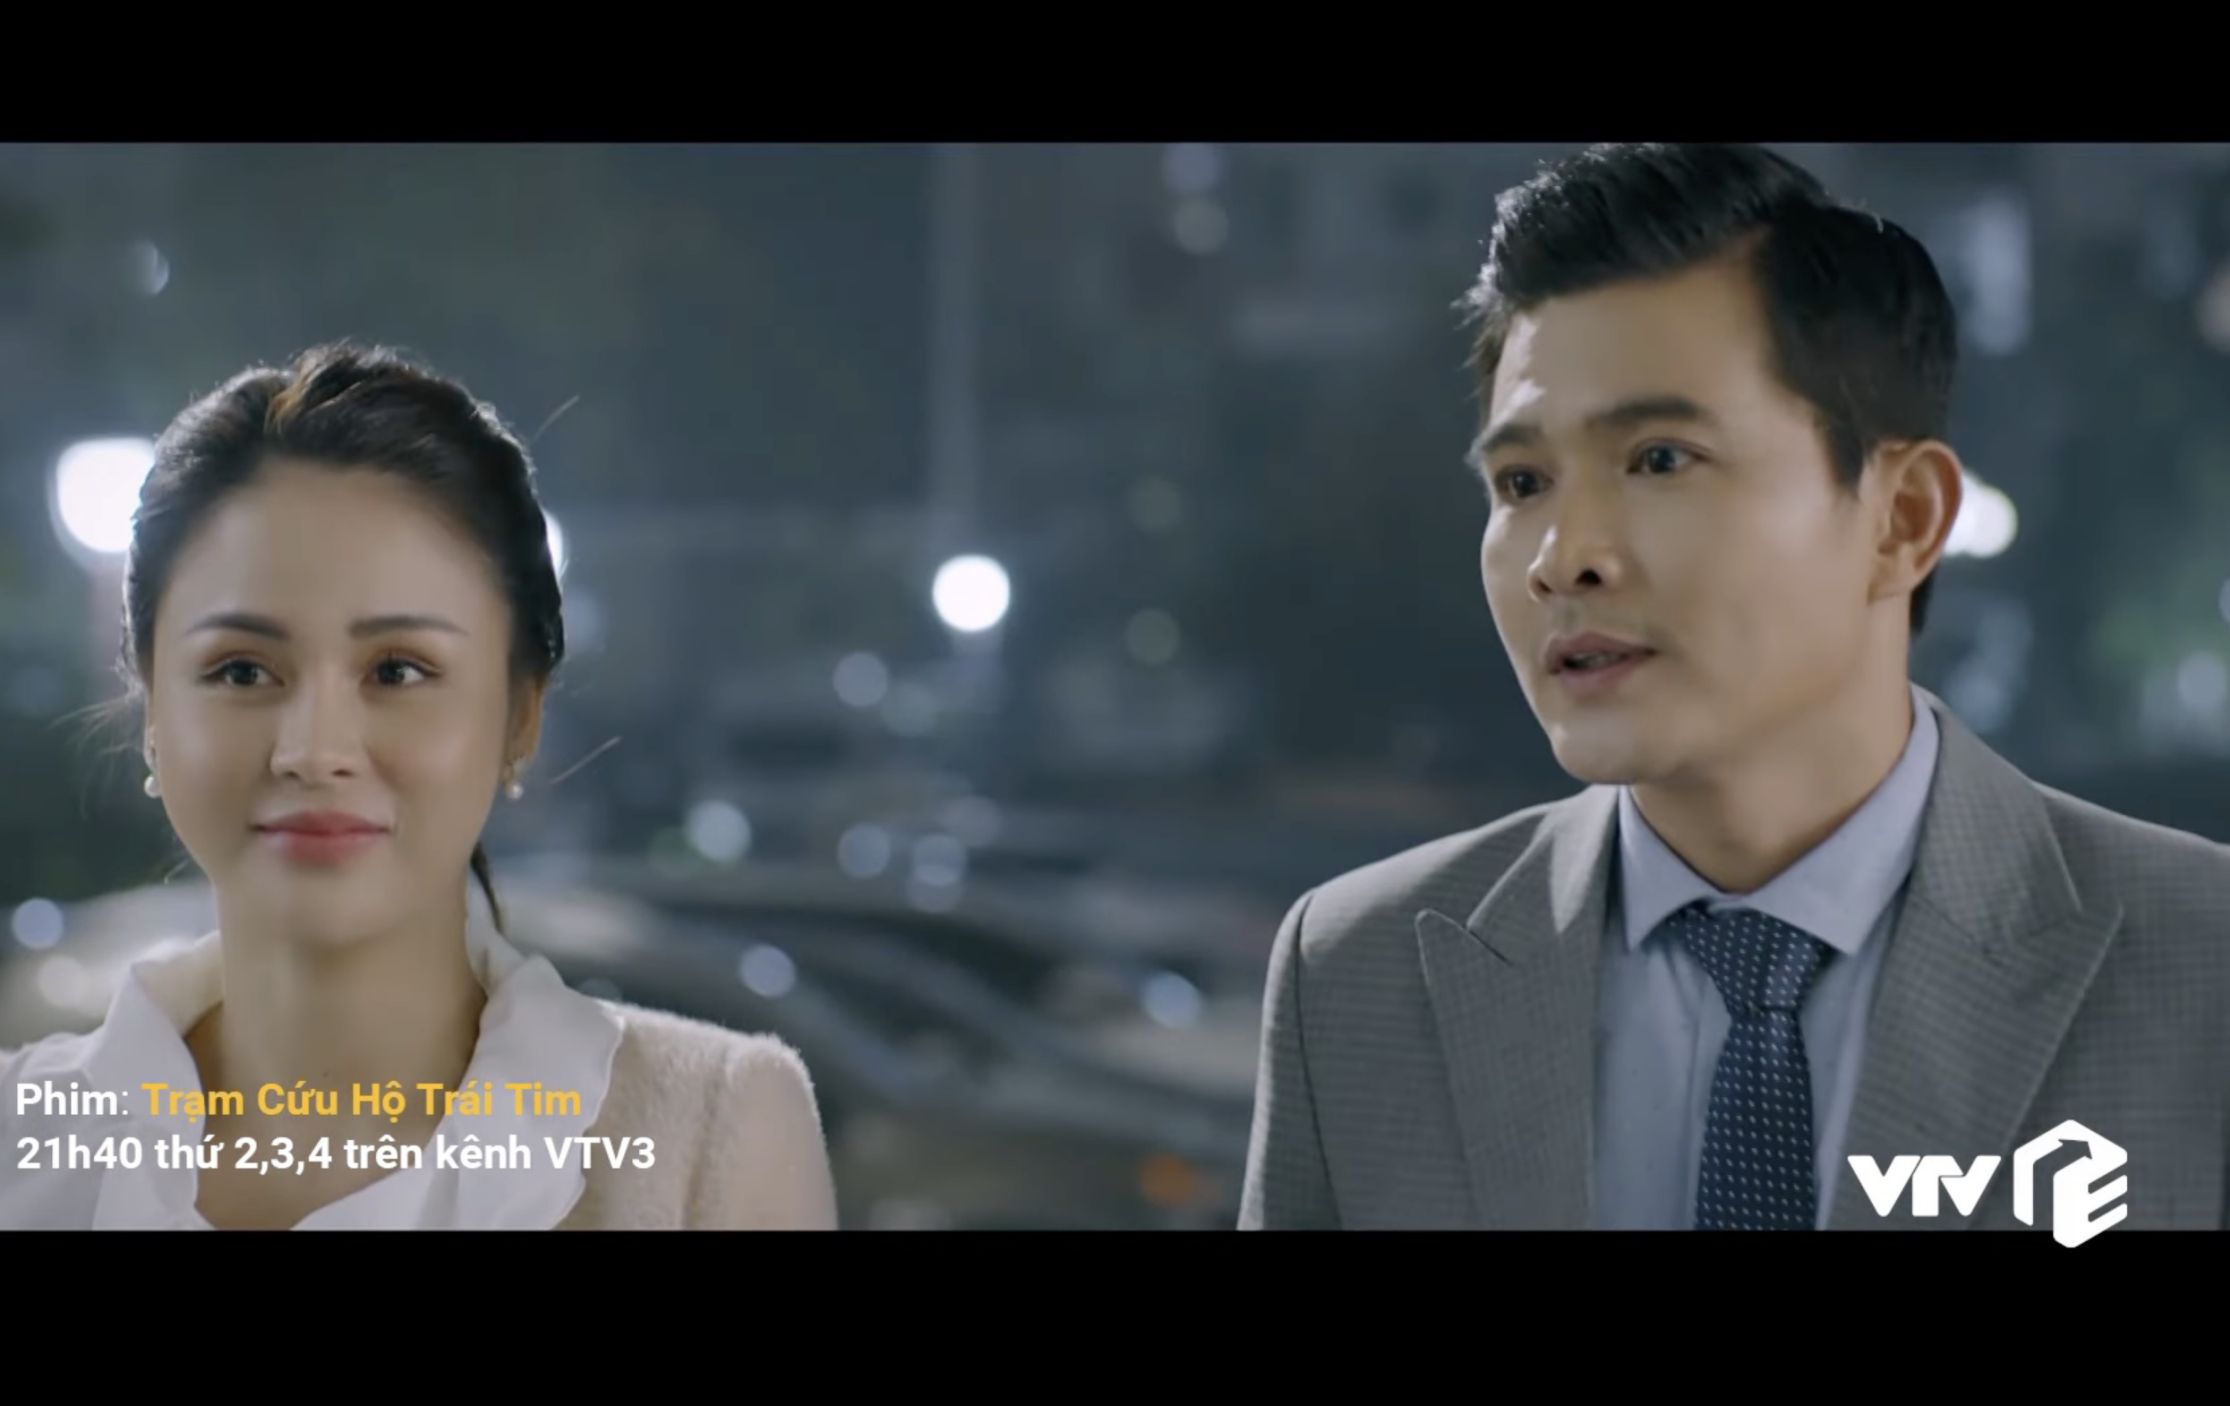 Lương Thu Trang trong phim “Trạm cứu hộ trái tim“. Ảnh Trailer phim